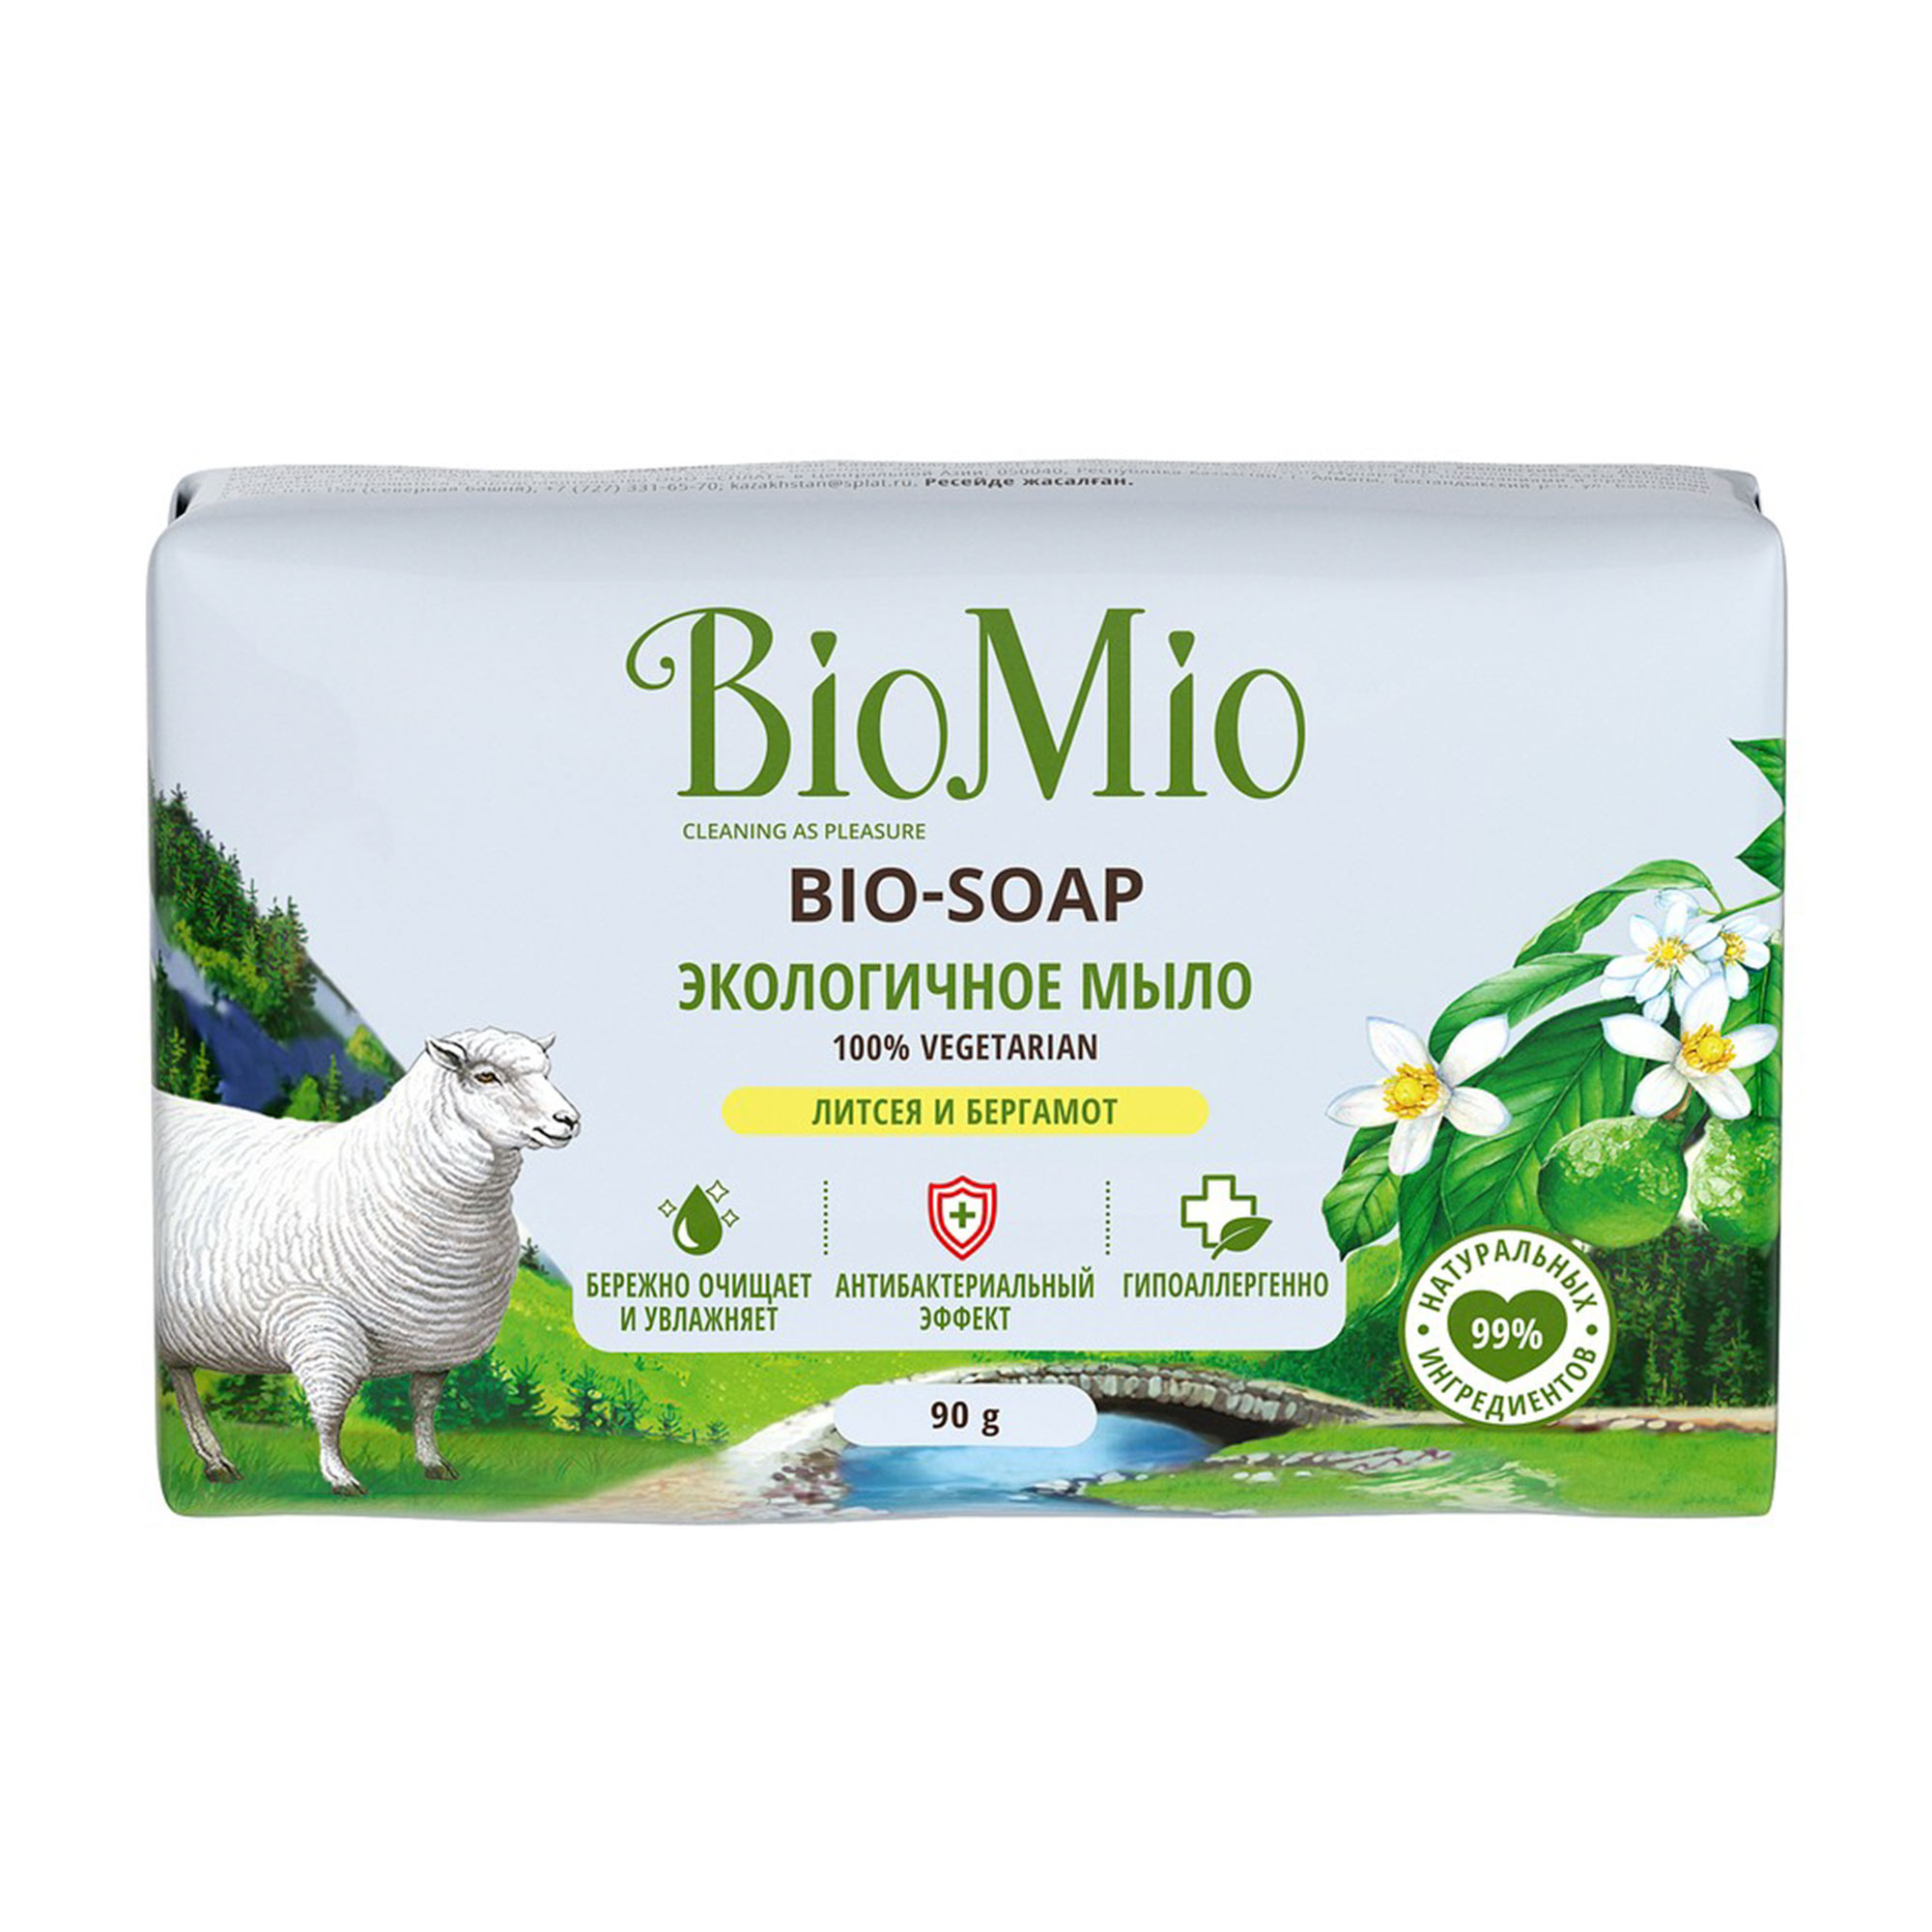 Экологичное туалетное мыло BioMio BIO-SOAP  Литсея и бергамот 90 г